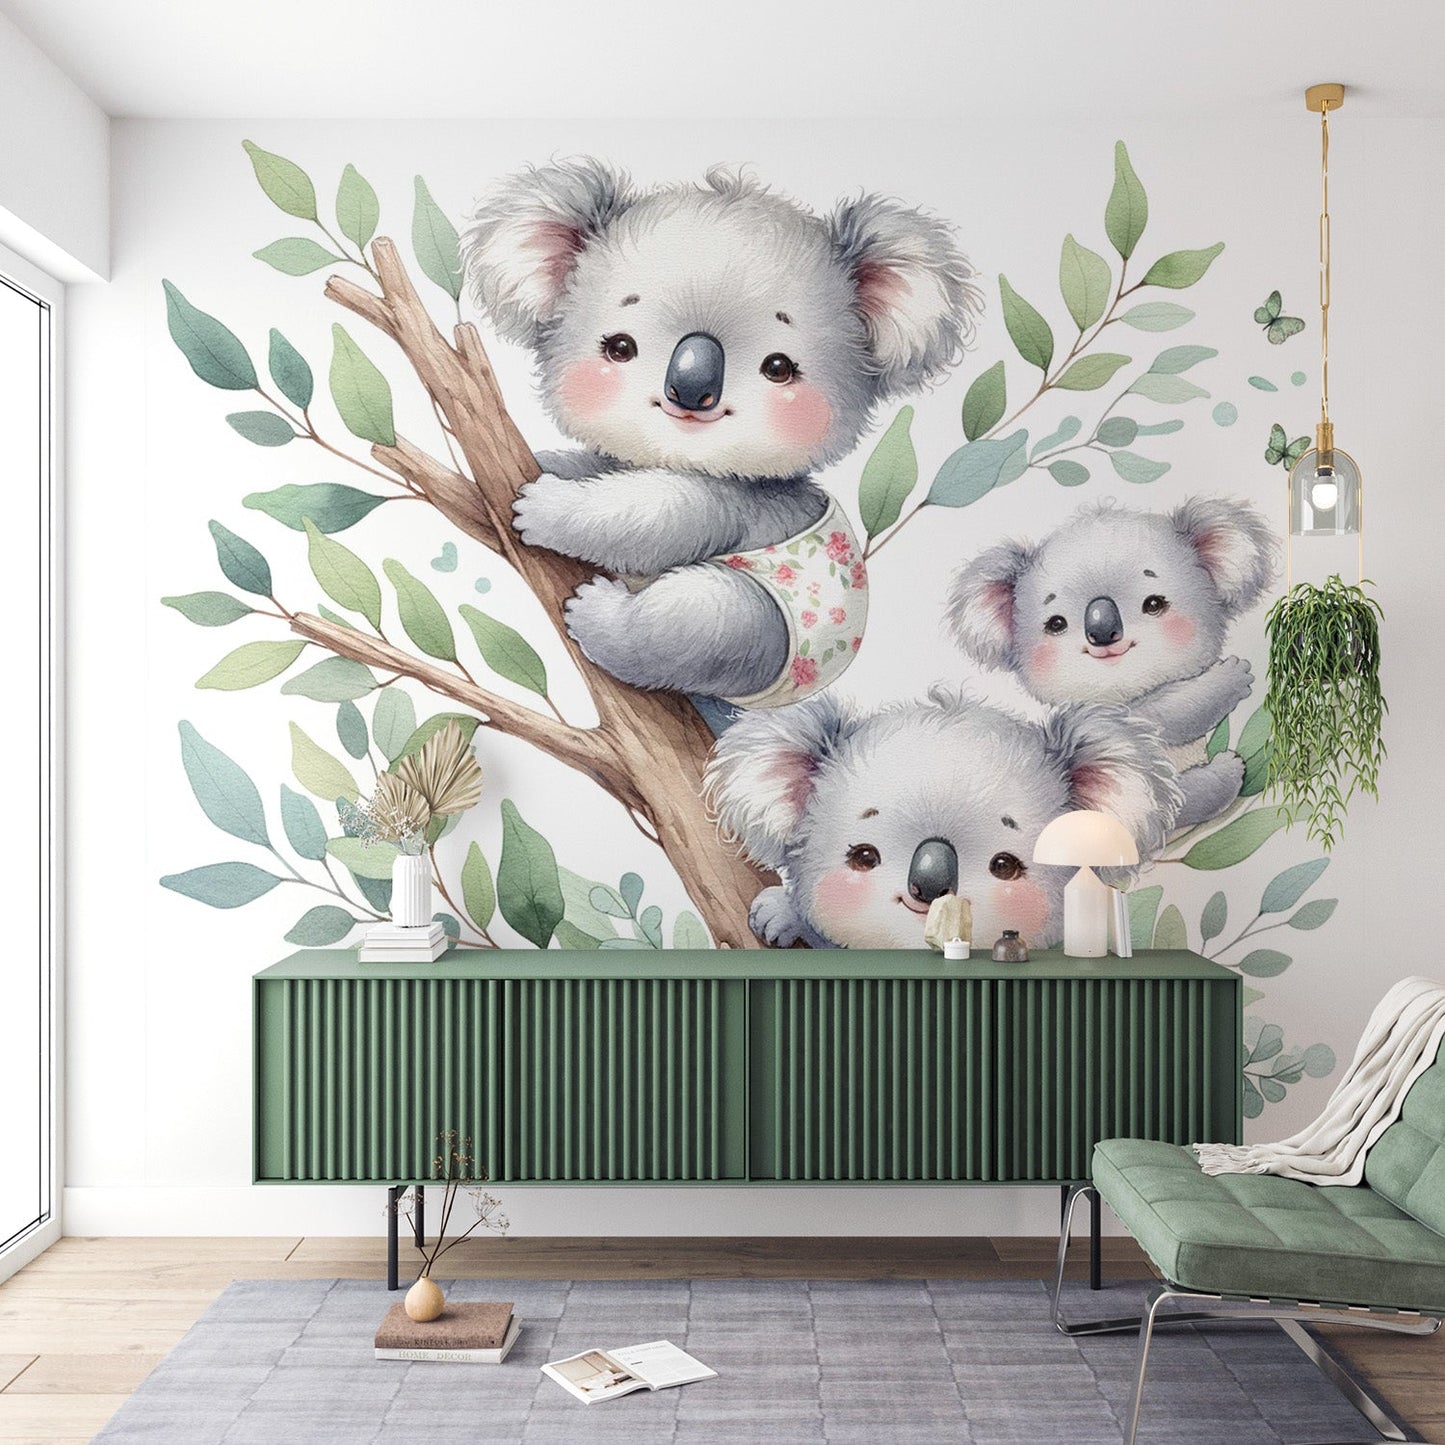 Baby koala wallpaper | Watercolour of little koala on their branch